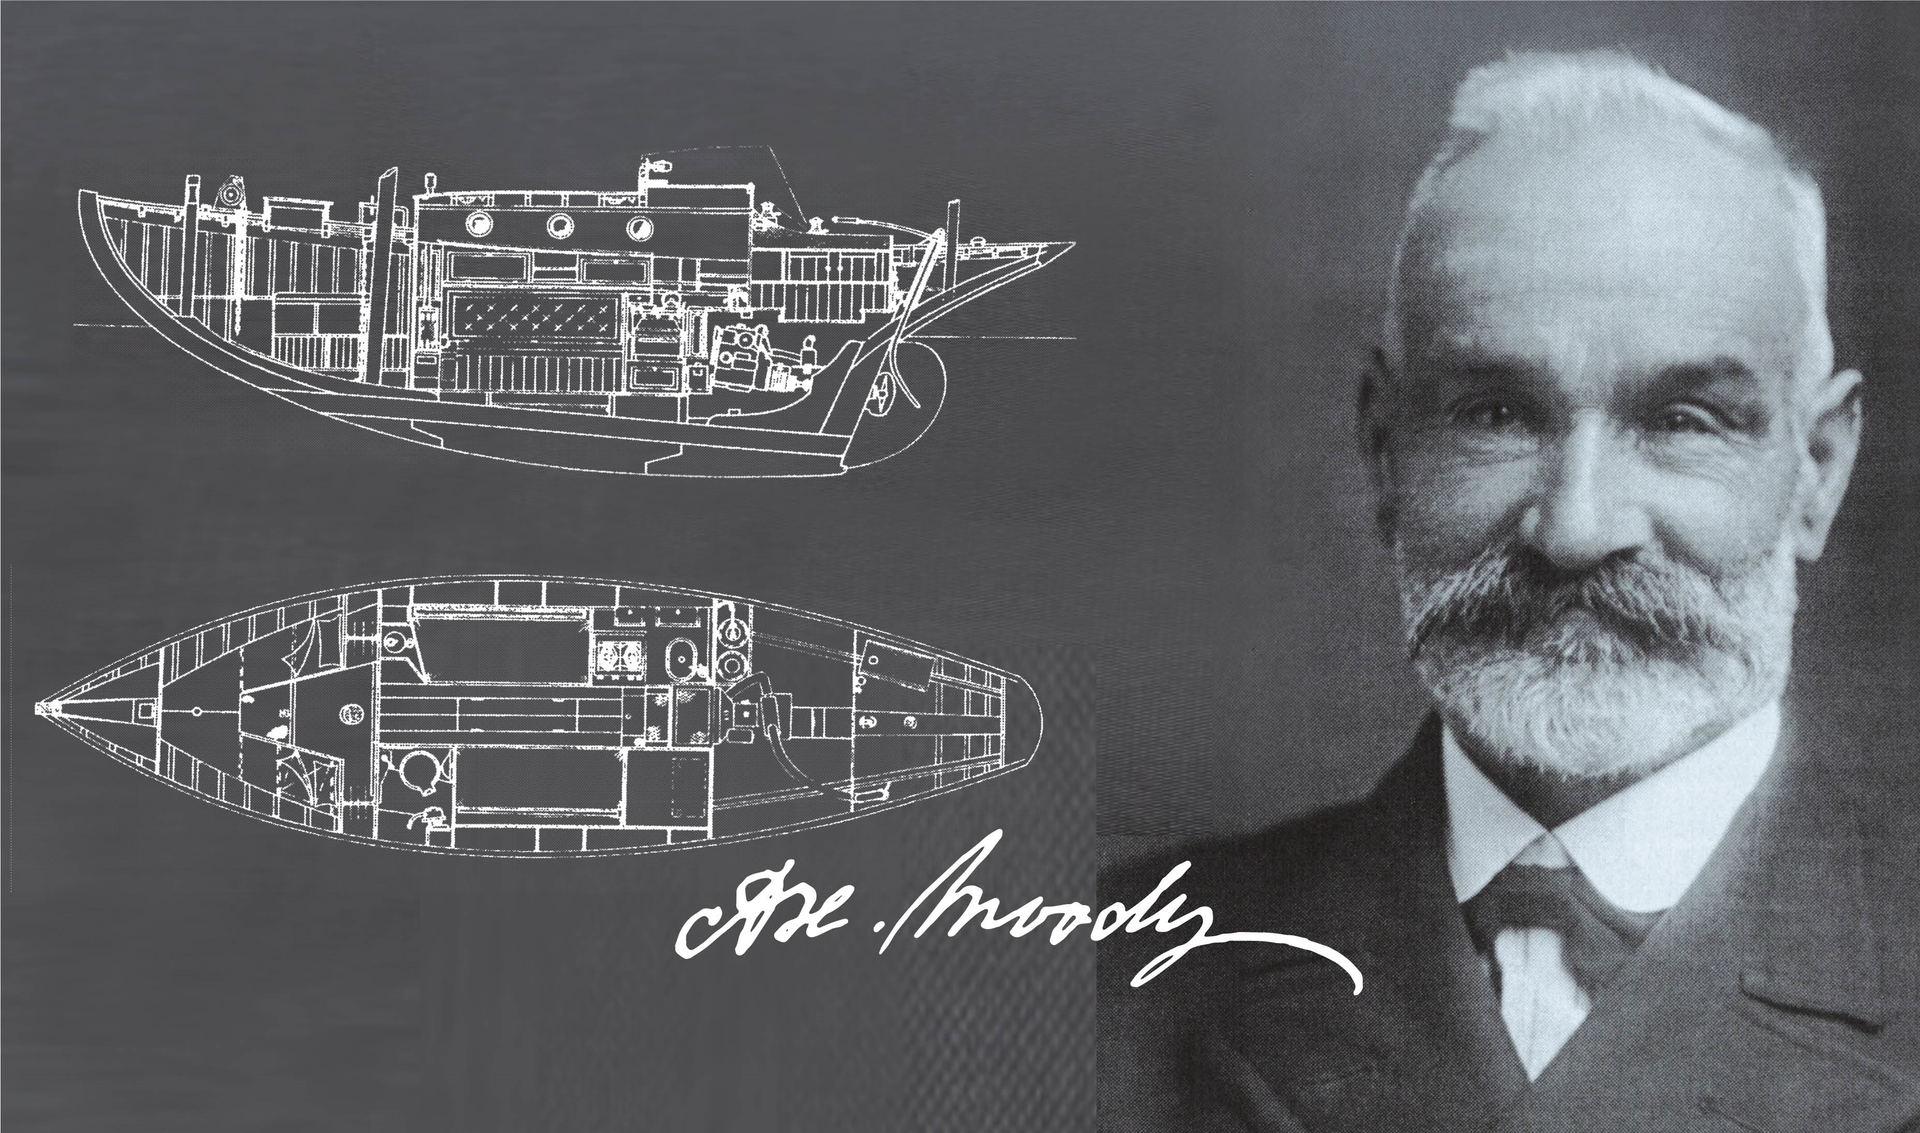 Histoire des voiliers Moody : l'une des plus anciennes marques de voiliers au monde